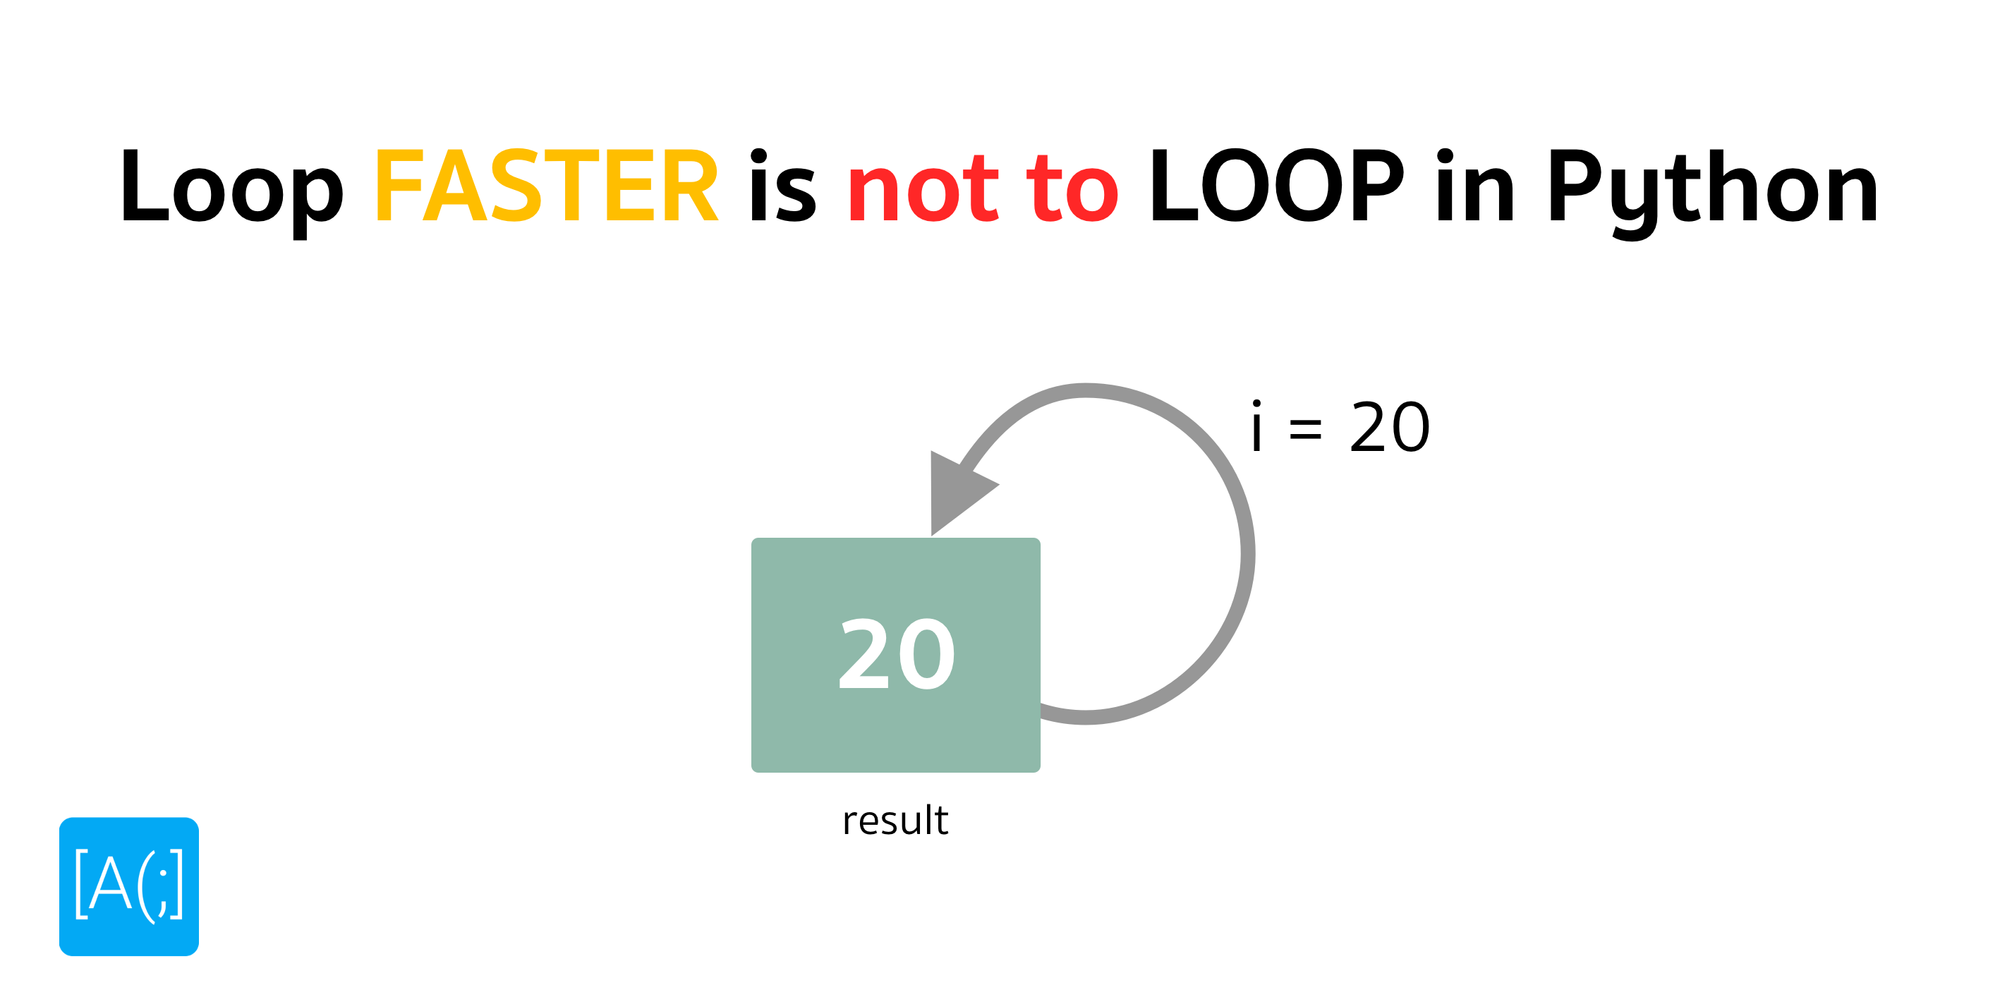 Loop FASTER is not to LOOP in Python